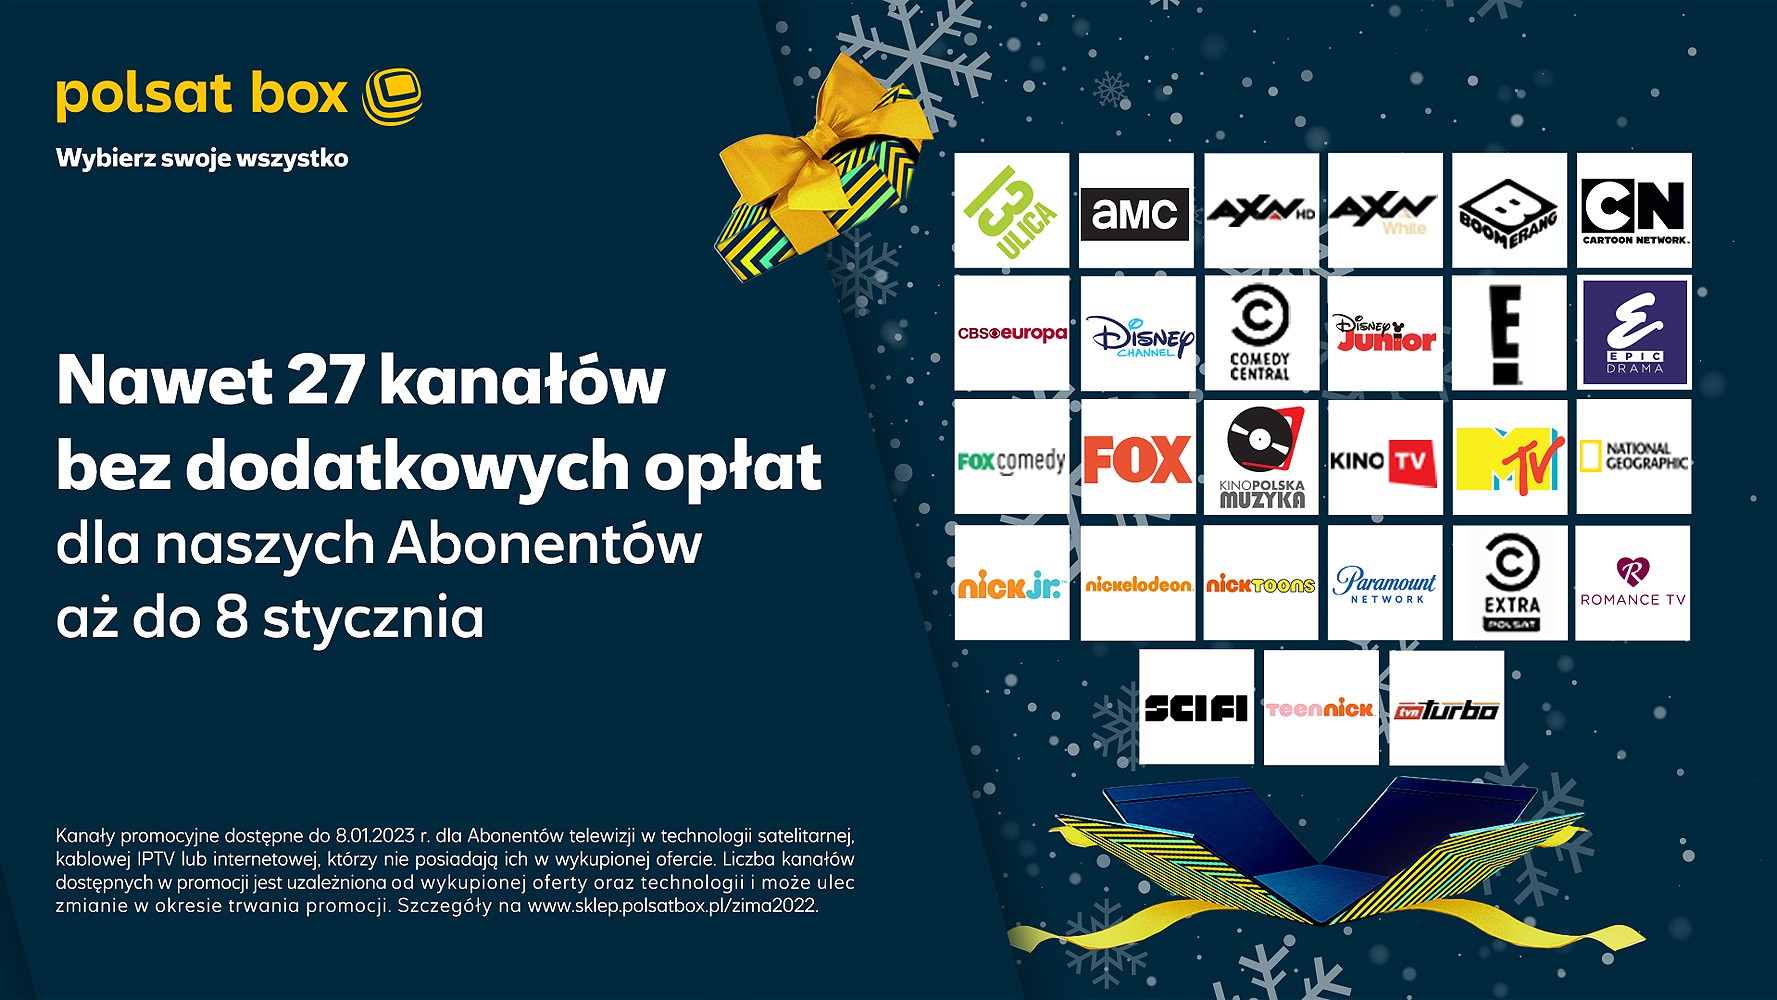 Nawet 27 kanałów w otwartym oknie na święta od Polsat Box